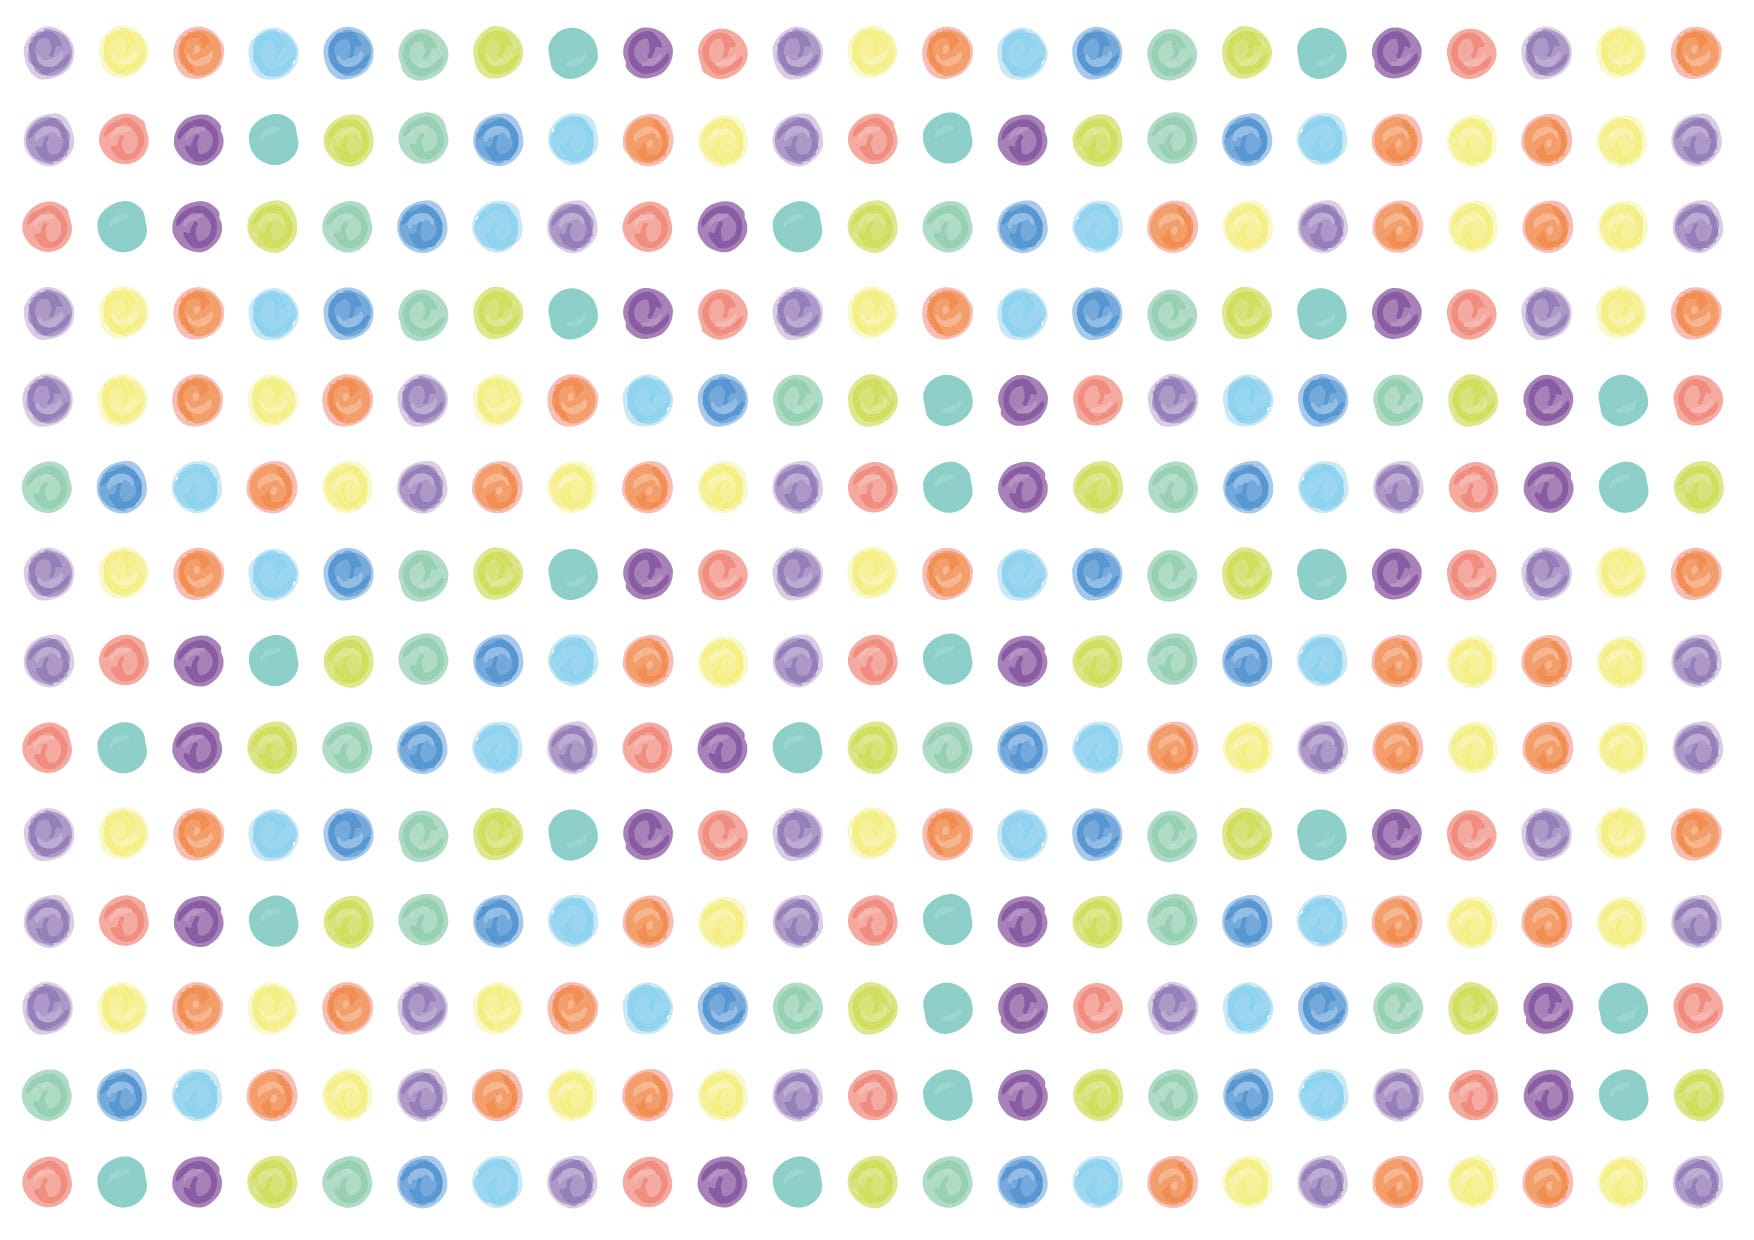 可愛いイラスト無料 水玉 手書き カラフル 背景 Free Illustration Polka Dot Handwritten Colorful Background 公式 イラスト素材サイト イラストダウンロード